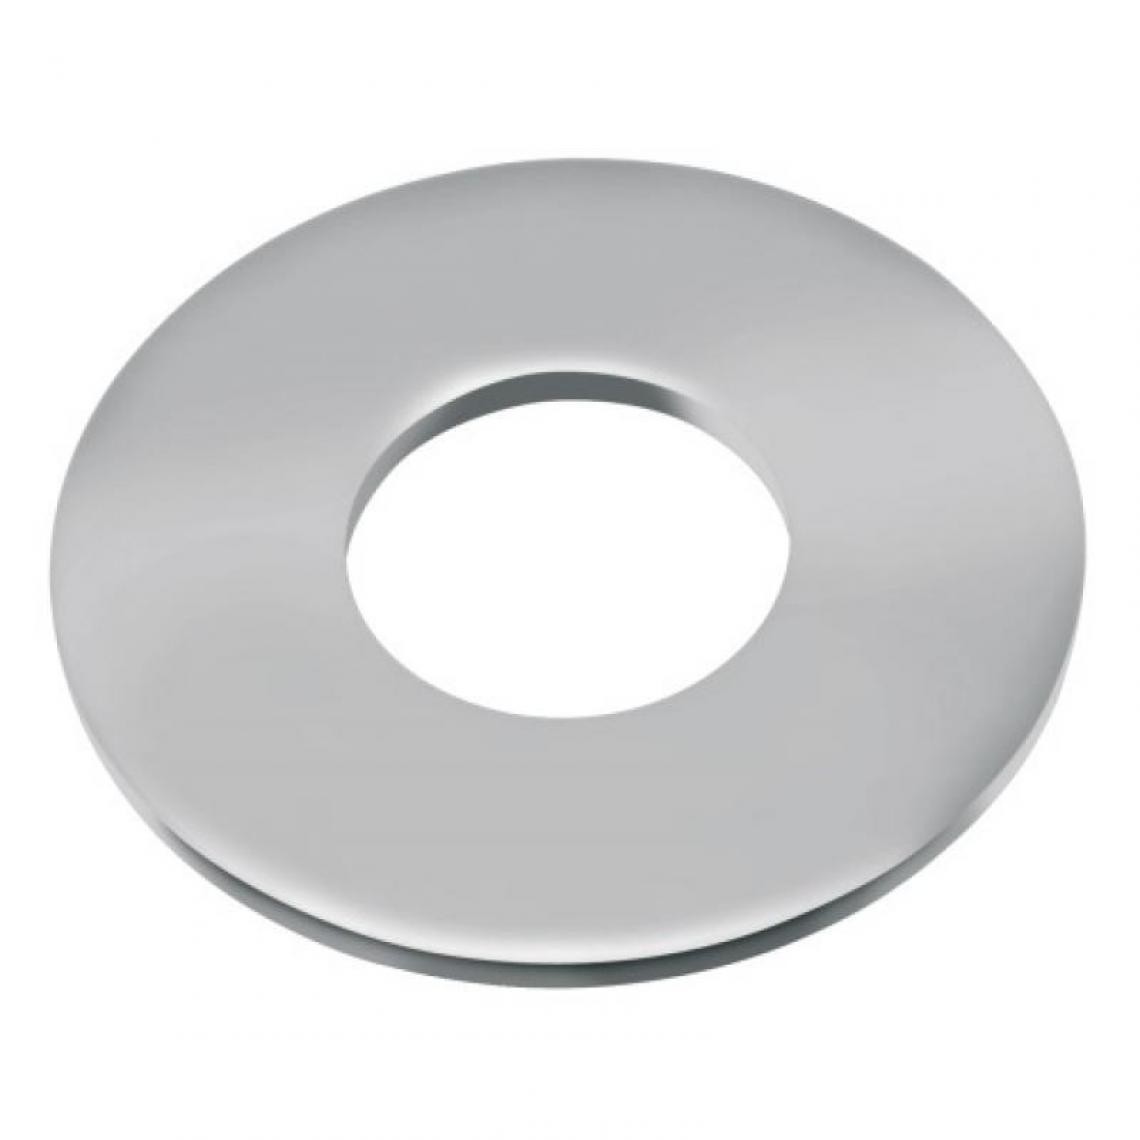 Acton - Rondelles plates série large Lu inox A4, diamètre 10 mm, boîte de 100 pièces - Charnière de fenetre